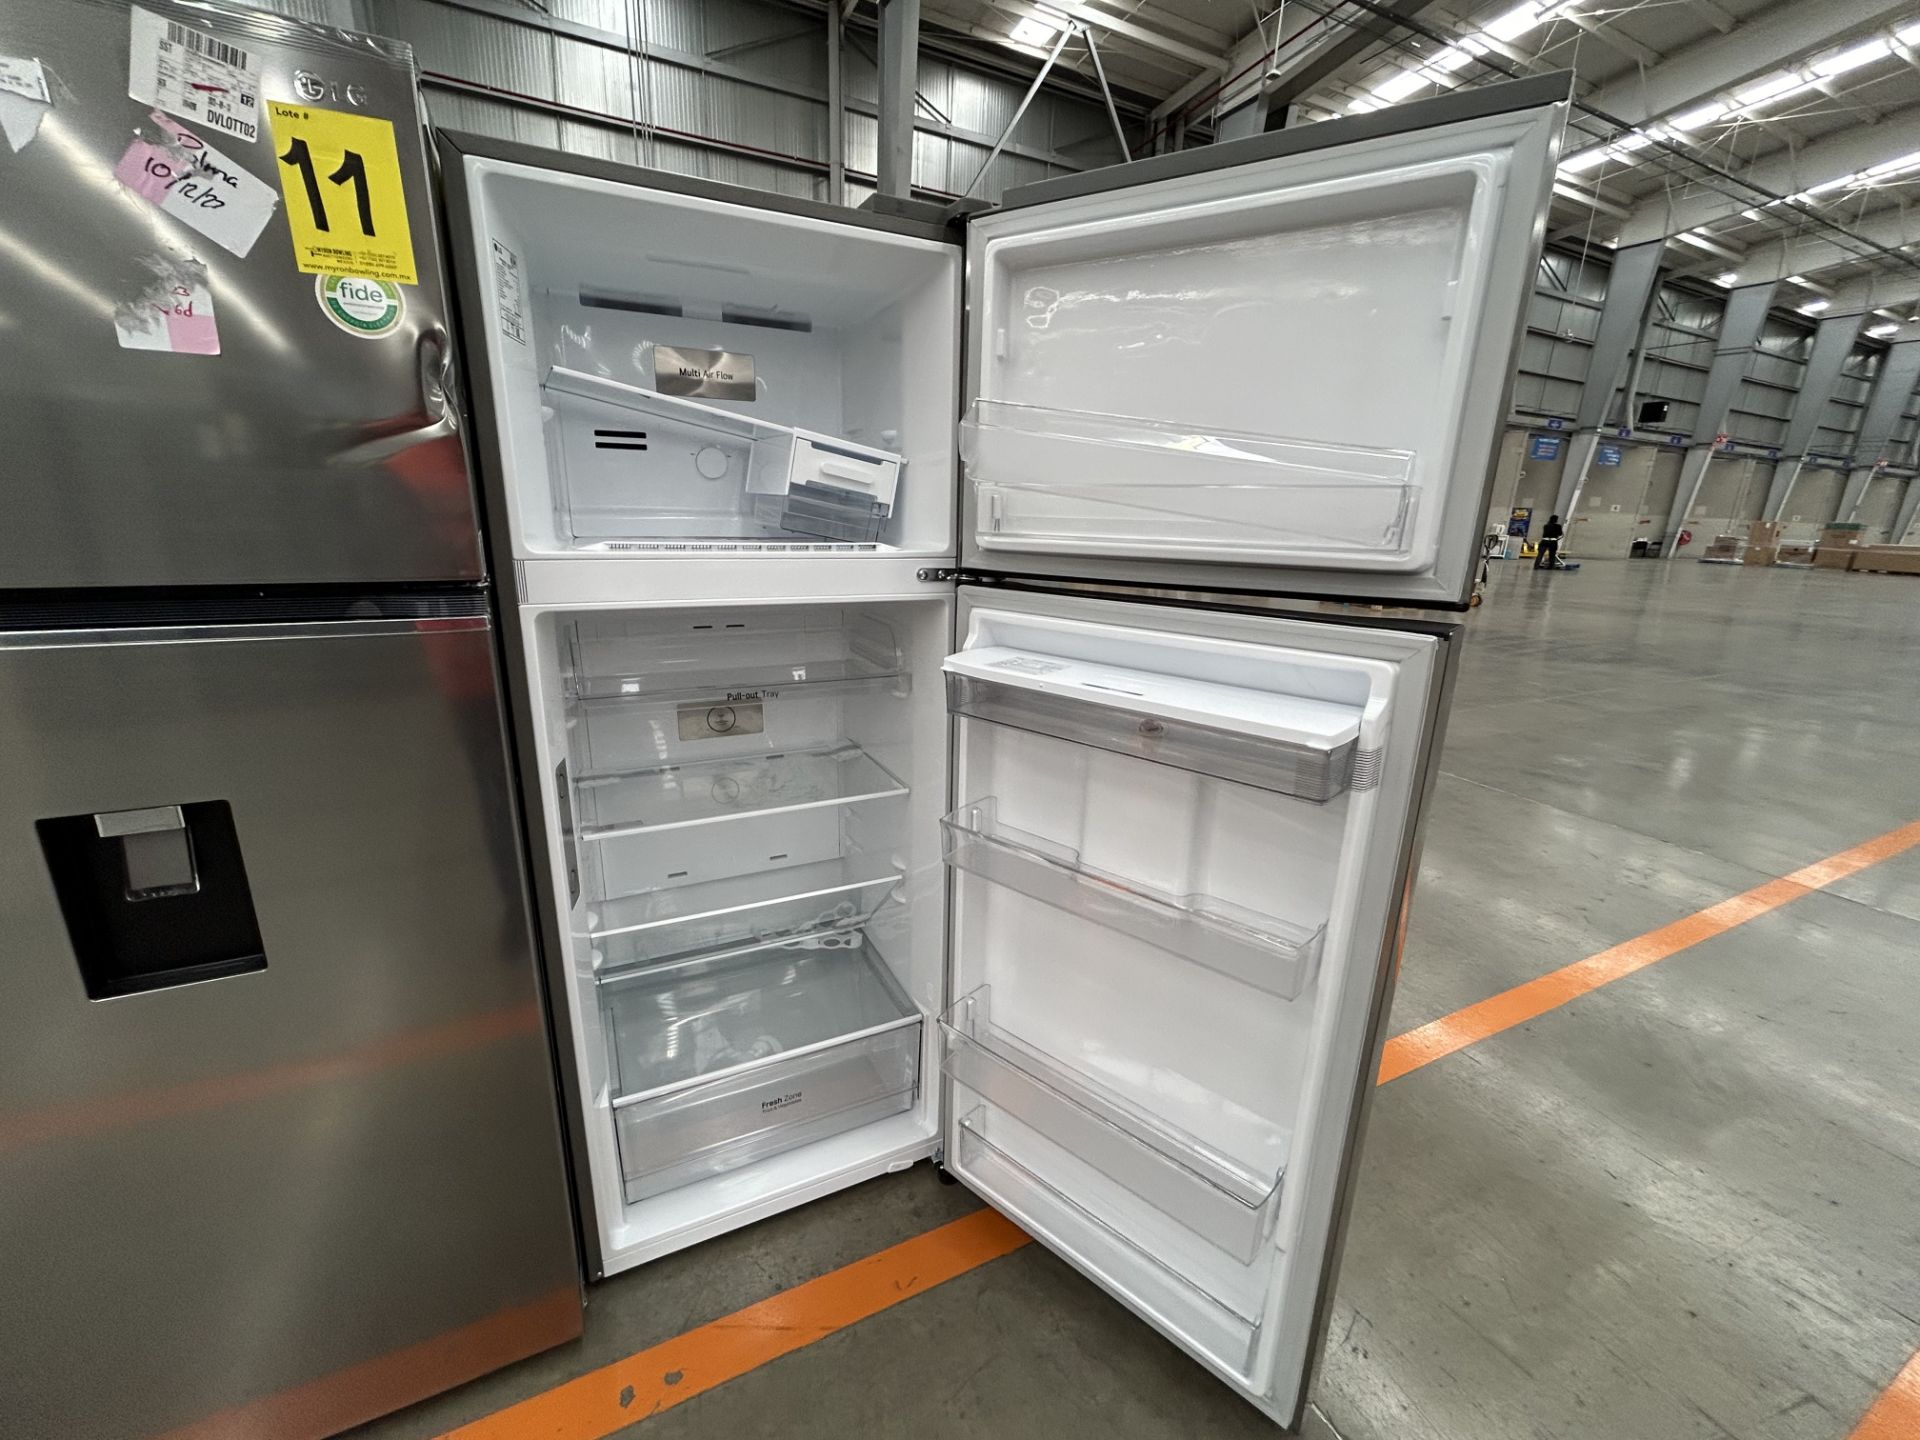 Lote de 2 refrigeradores contiene: 1 refrigerador con dispensador de agua Marca LG, Modelo VT40WP, - Image 4 of 7